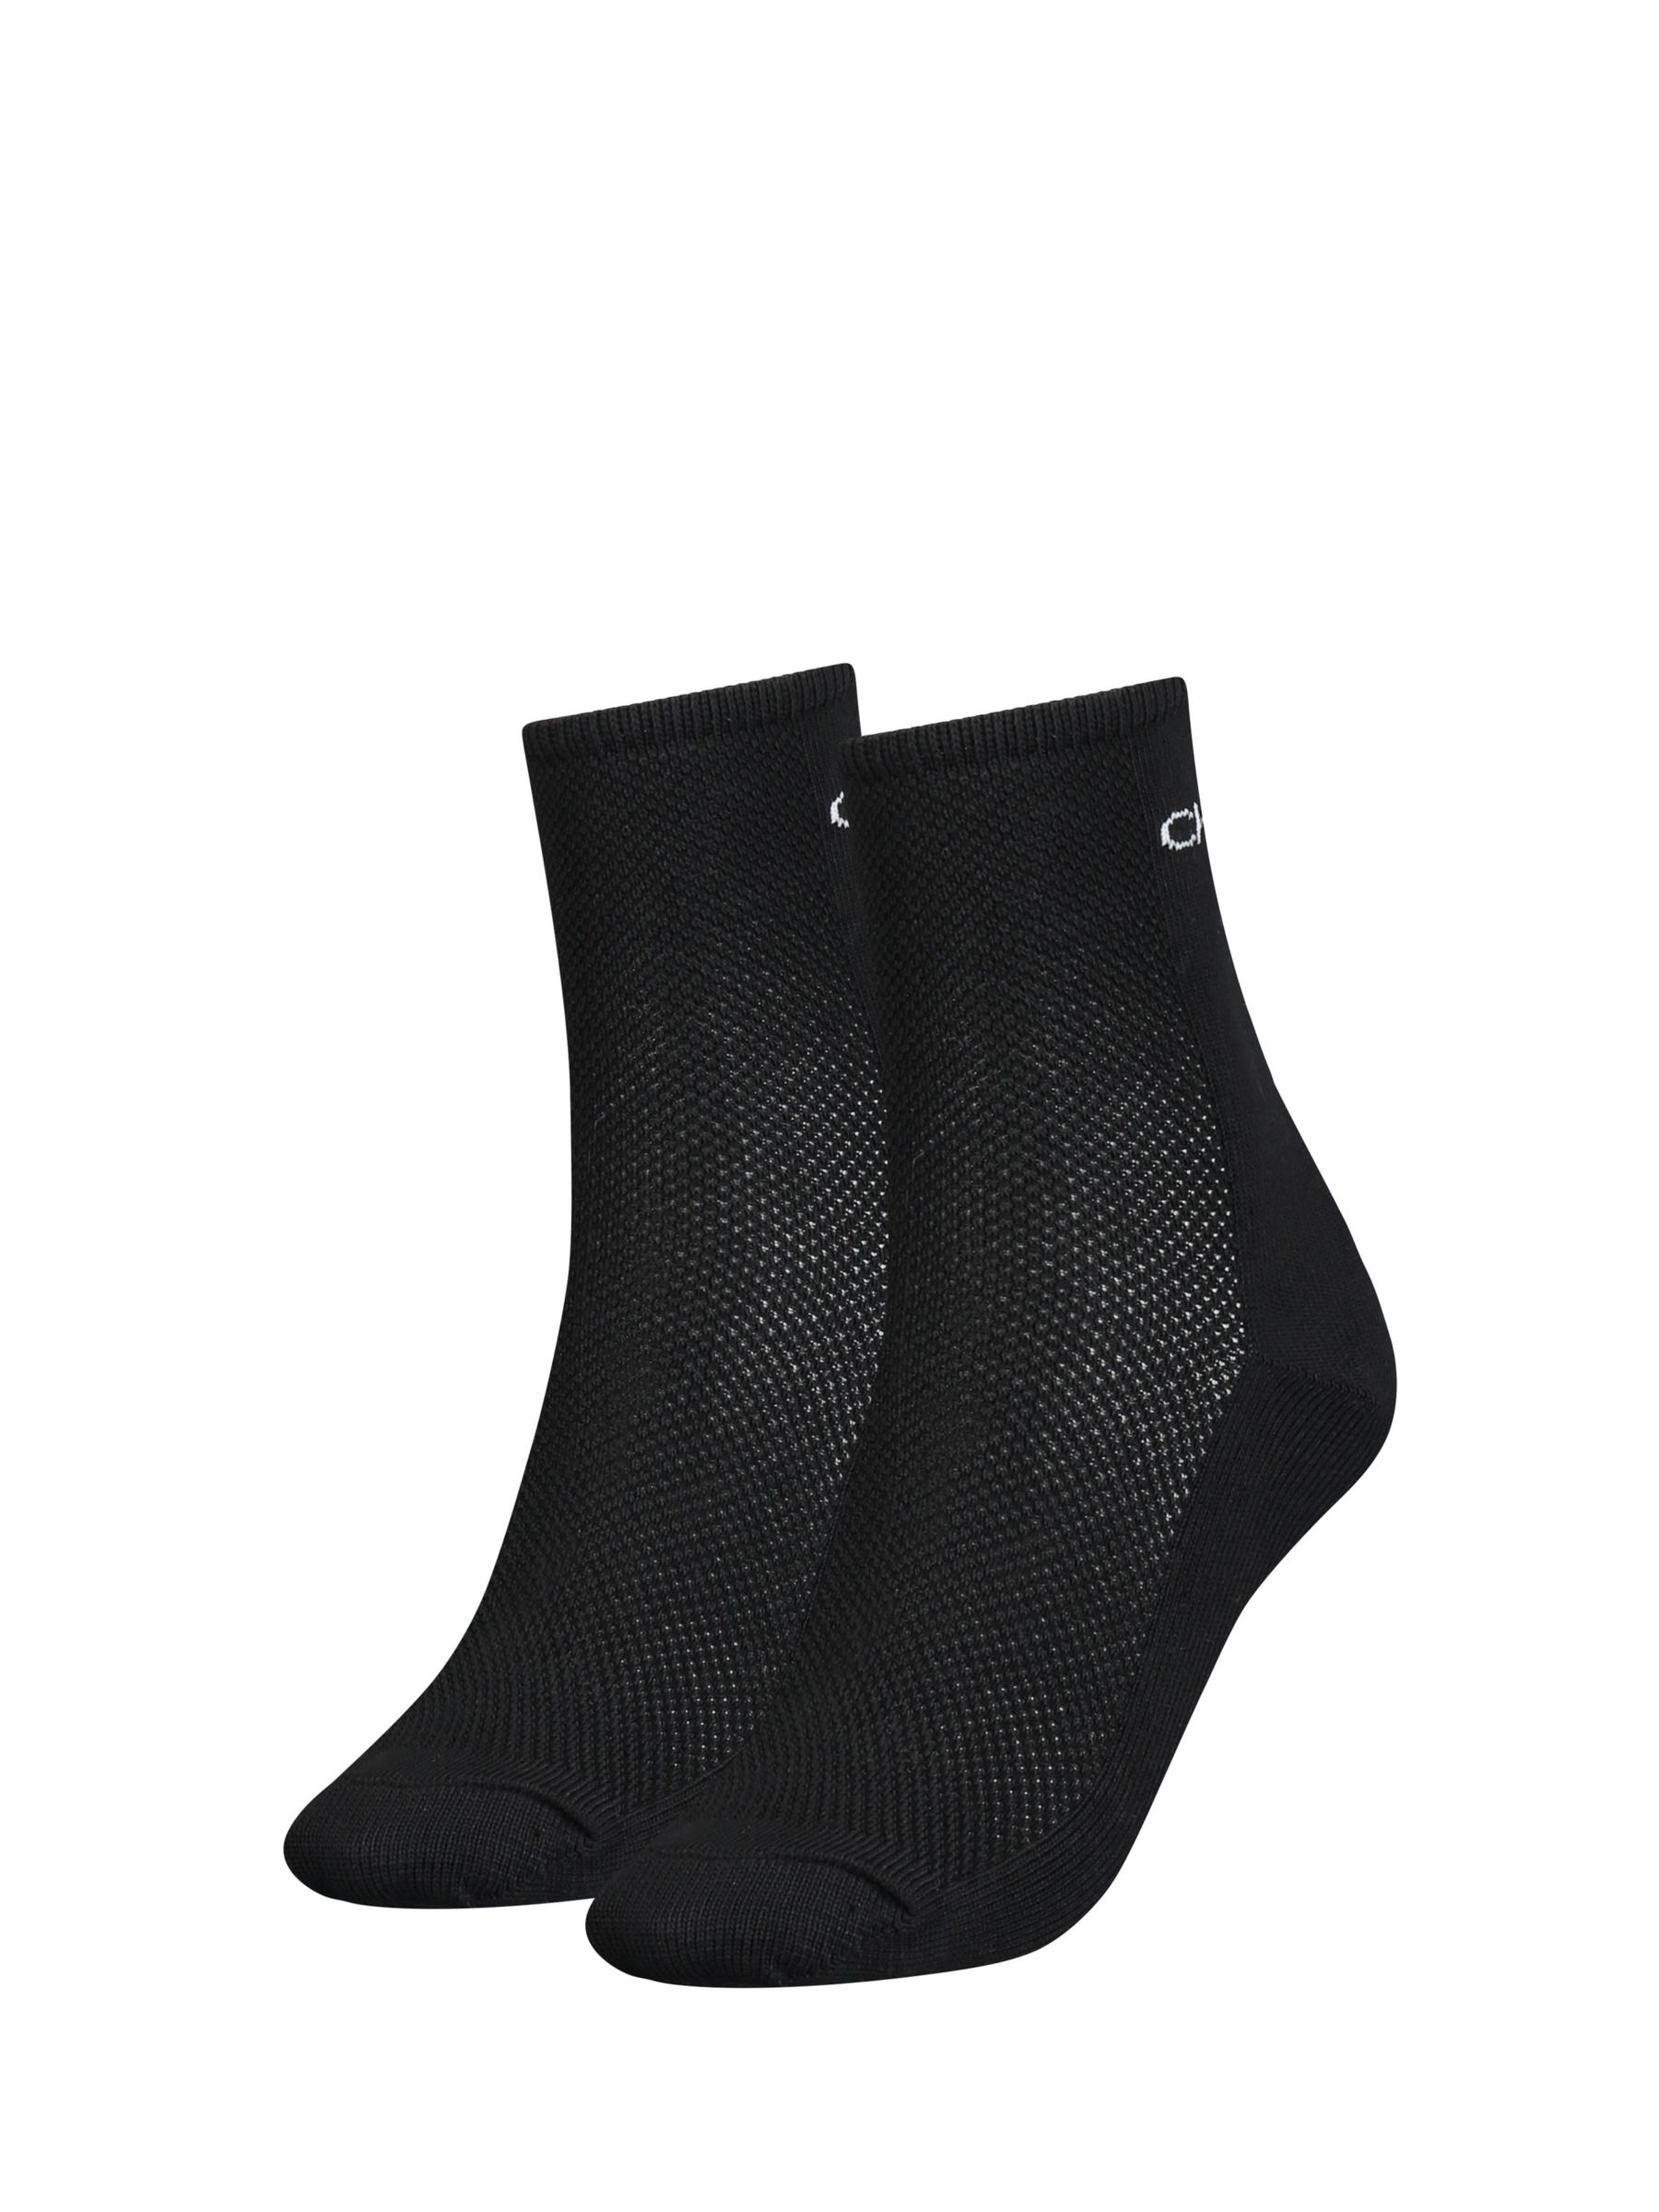 Calvin Klein Mesh Ankle Socks, Pack of 2